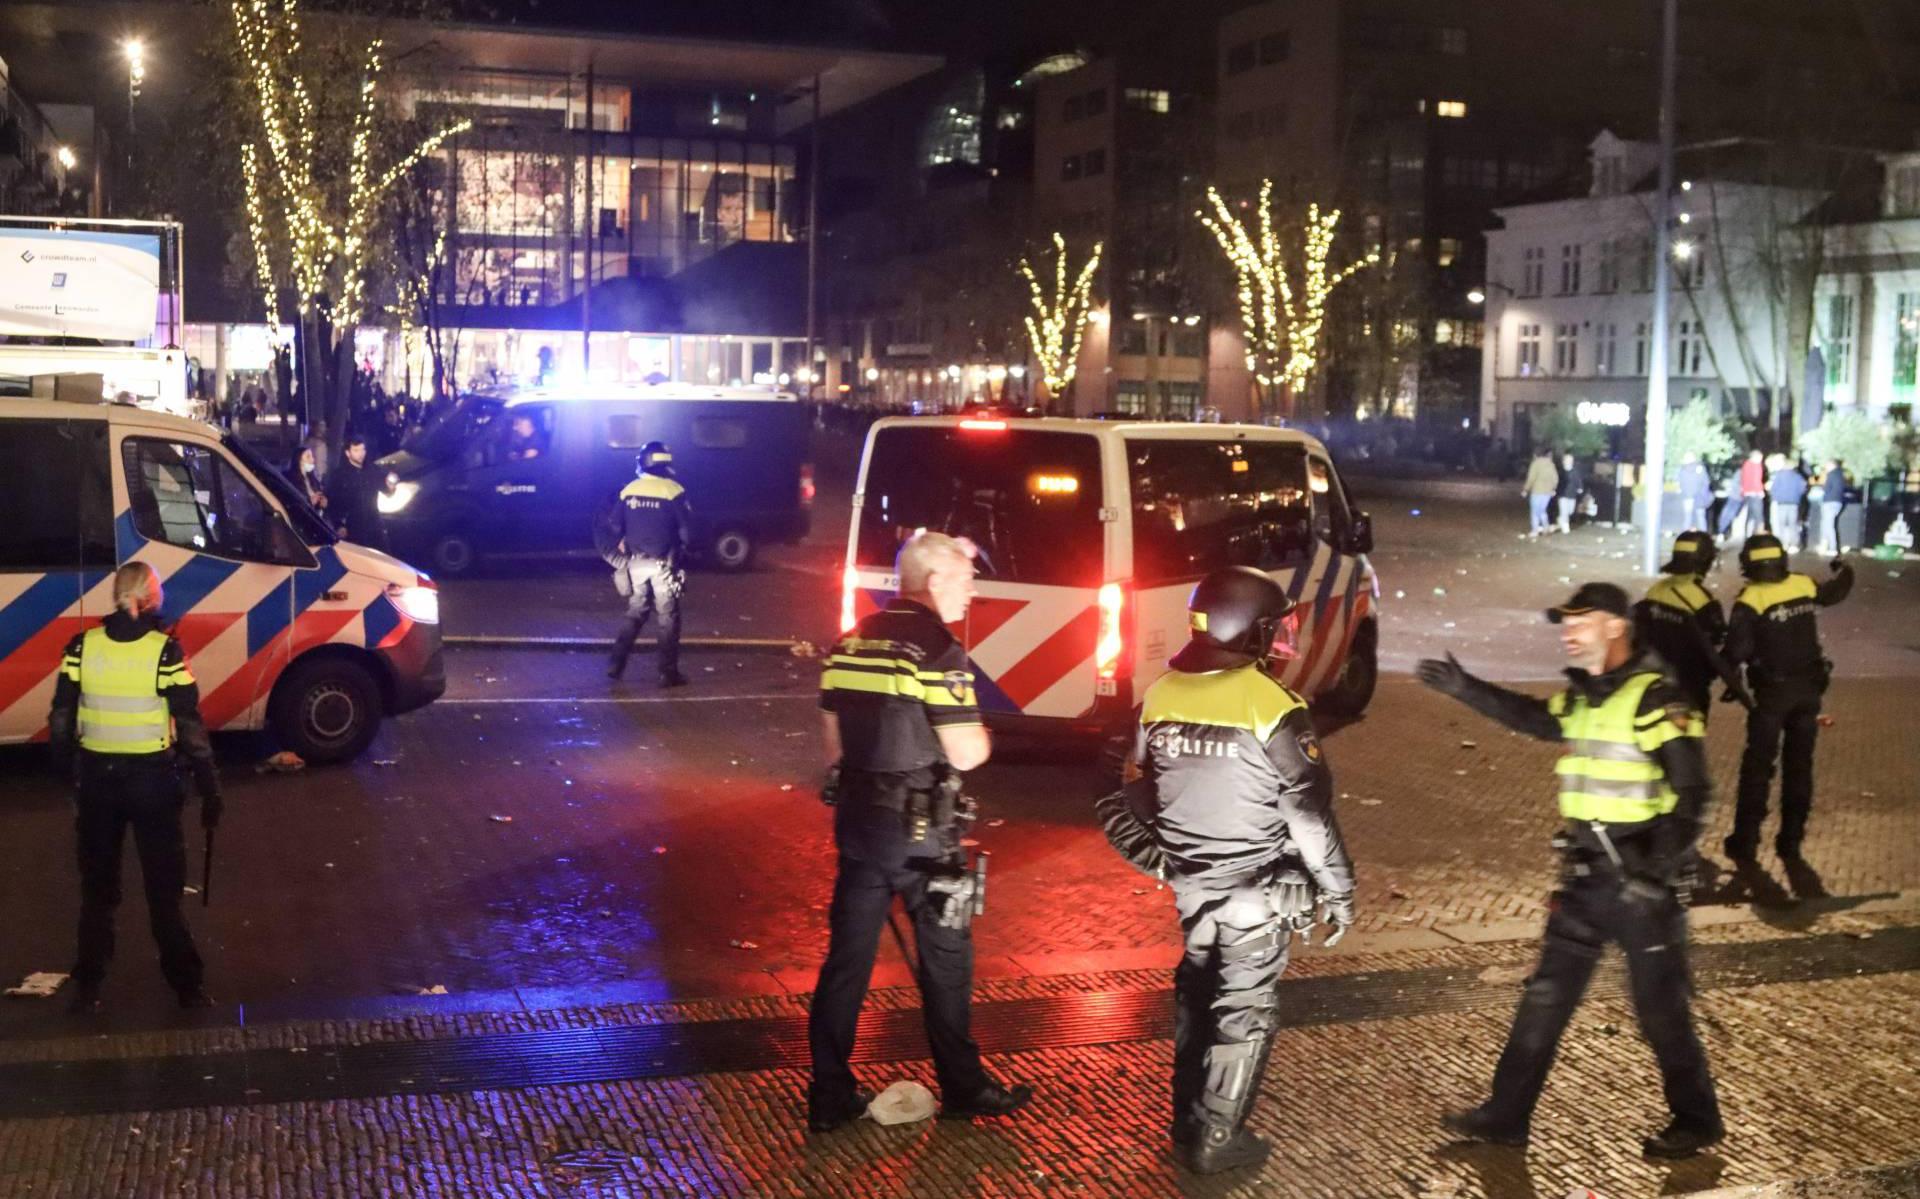 Politie verricht vijftien arrestaties in centrum van Leeuwarden - Leeuwarder Courant